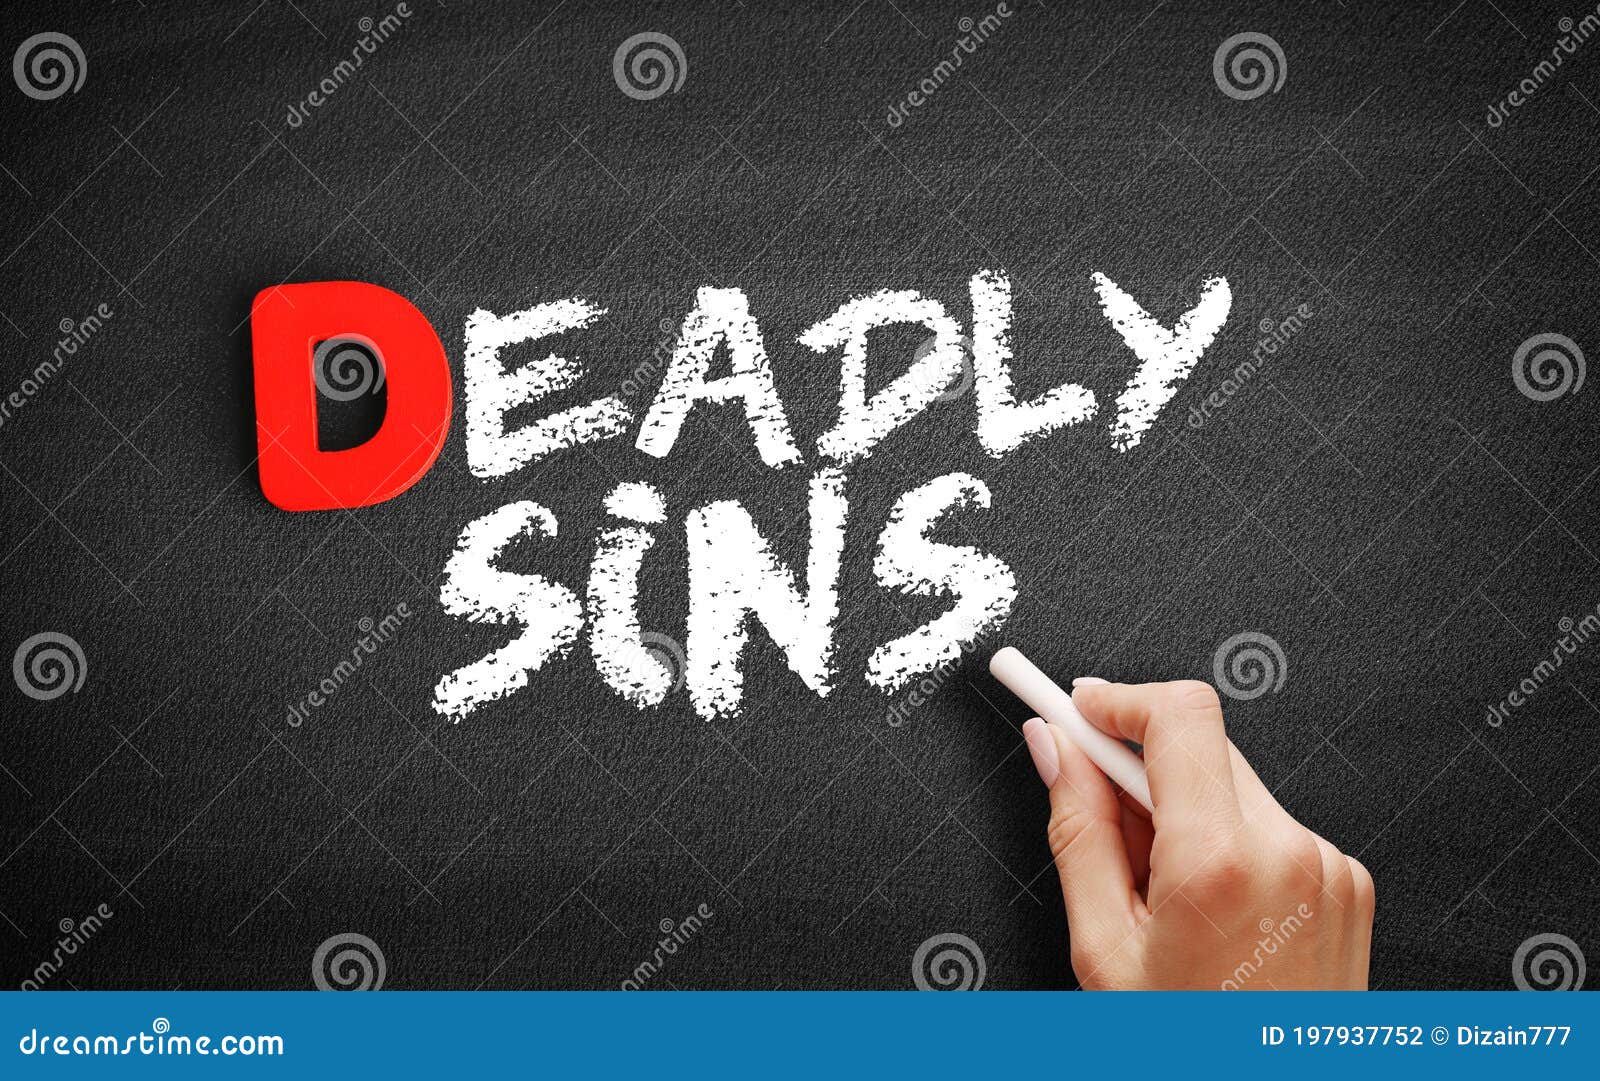 deadly sins text on blackboard